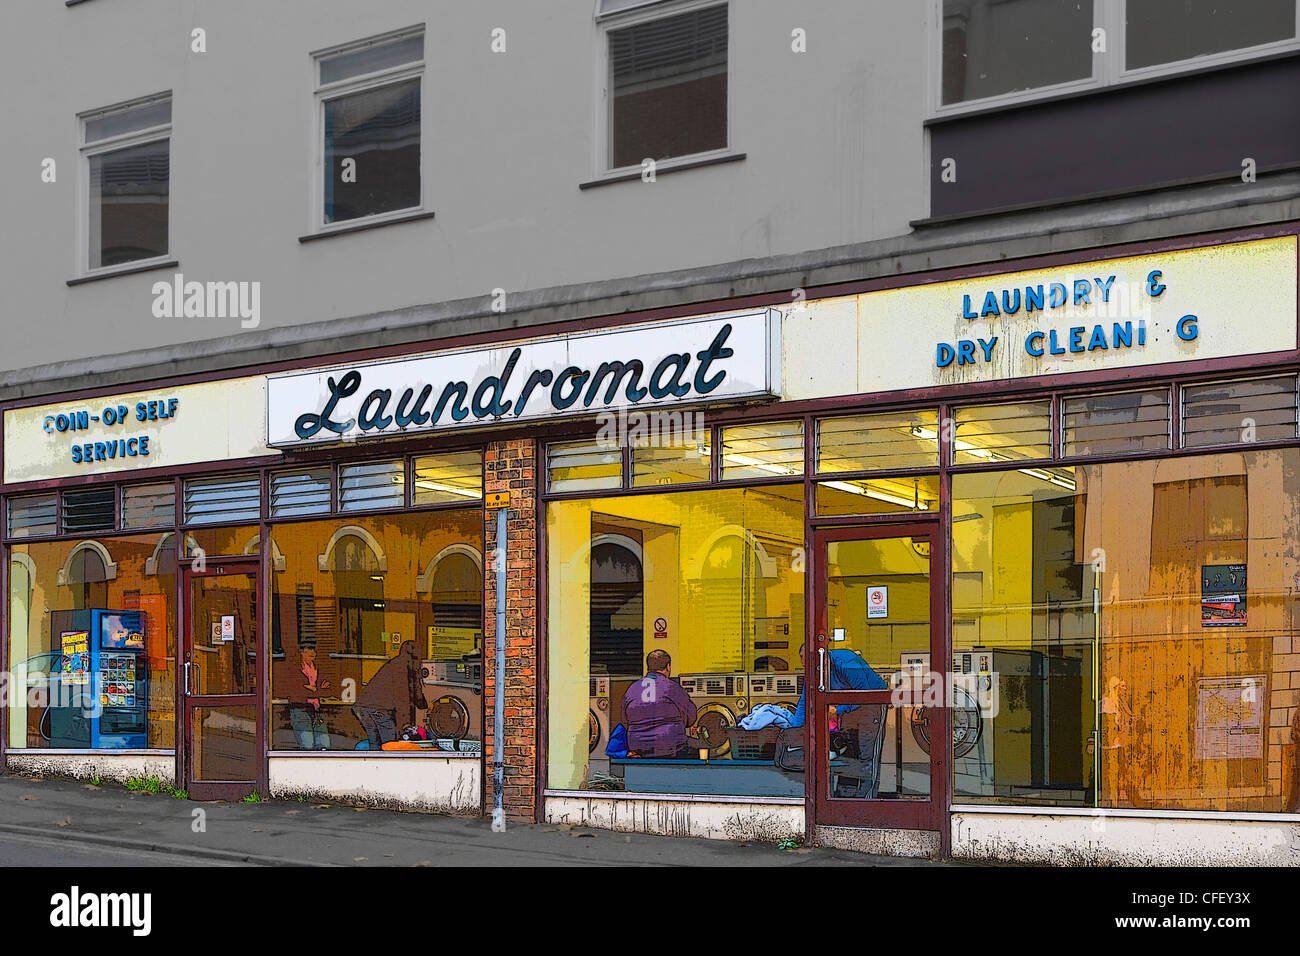 Laundromat, Sydenham Road, Guildford, Surrey, England, UK Stock Photo